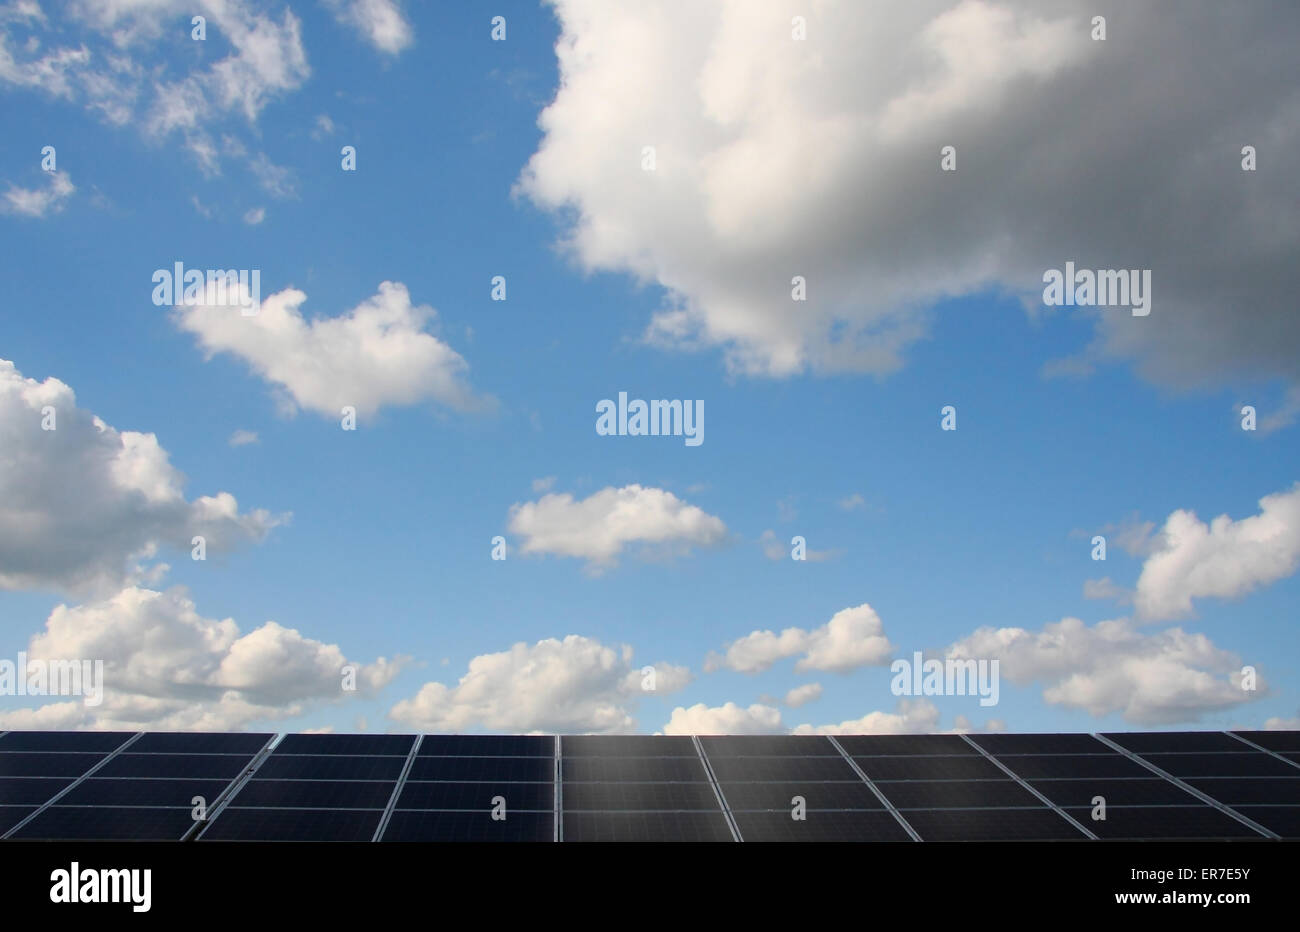 Panneaux photovoltaïques dans une ferme solaire sur un jour nuageux, Dorset, UK Banque D'Images